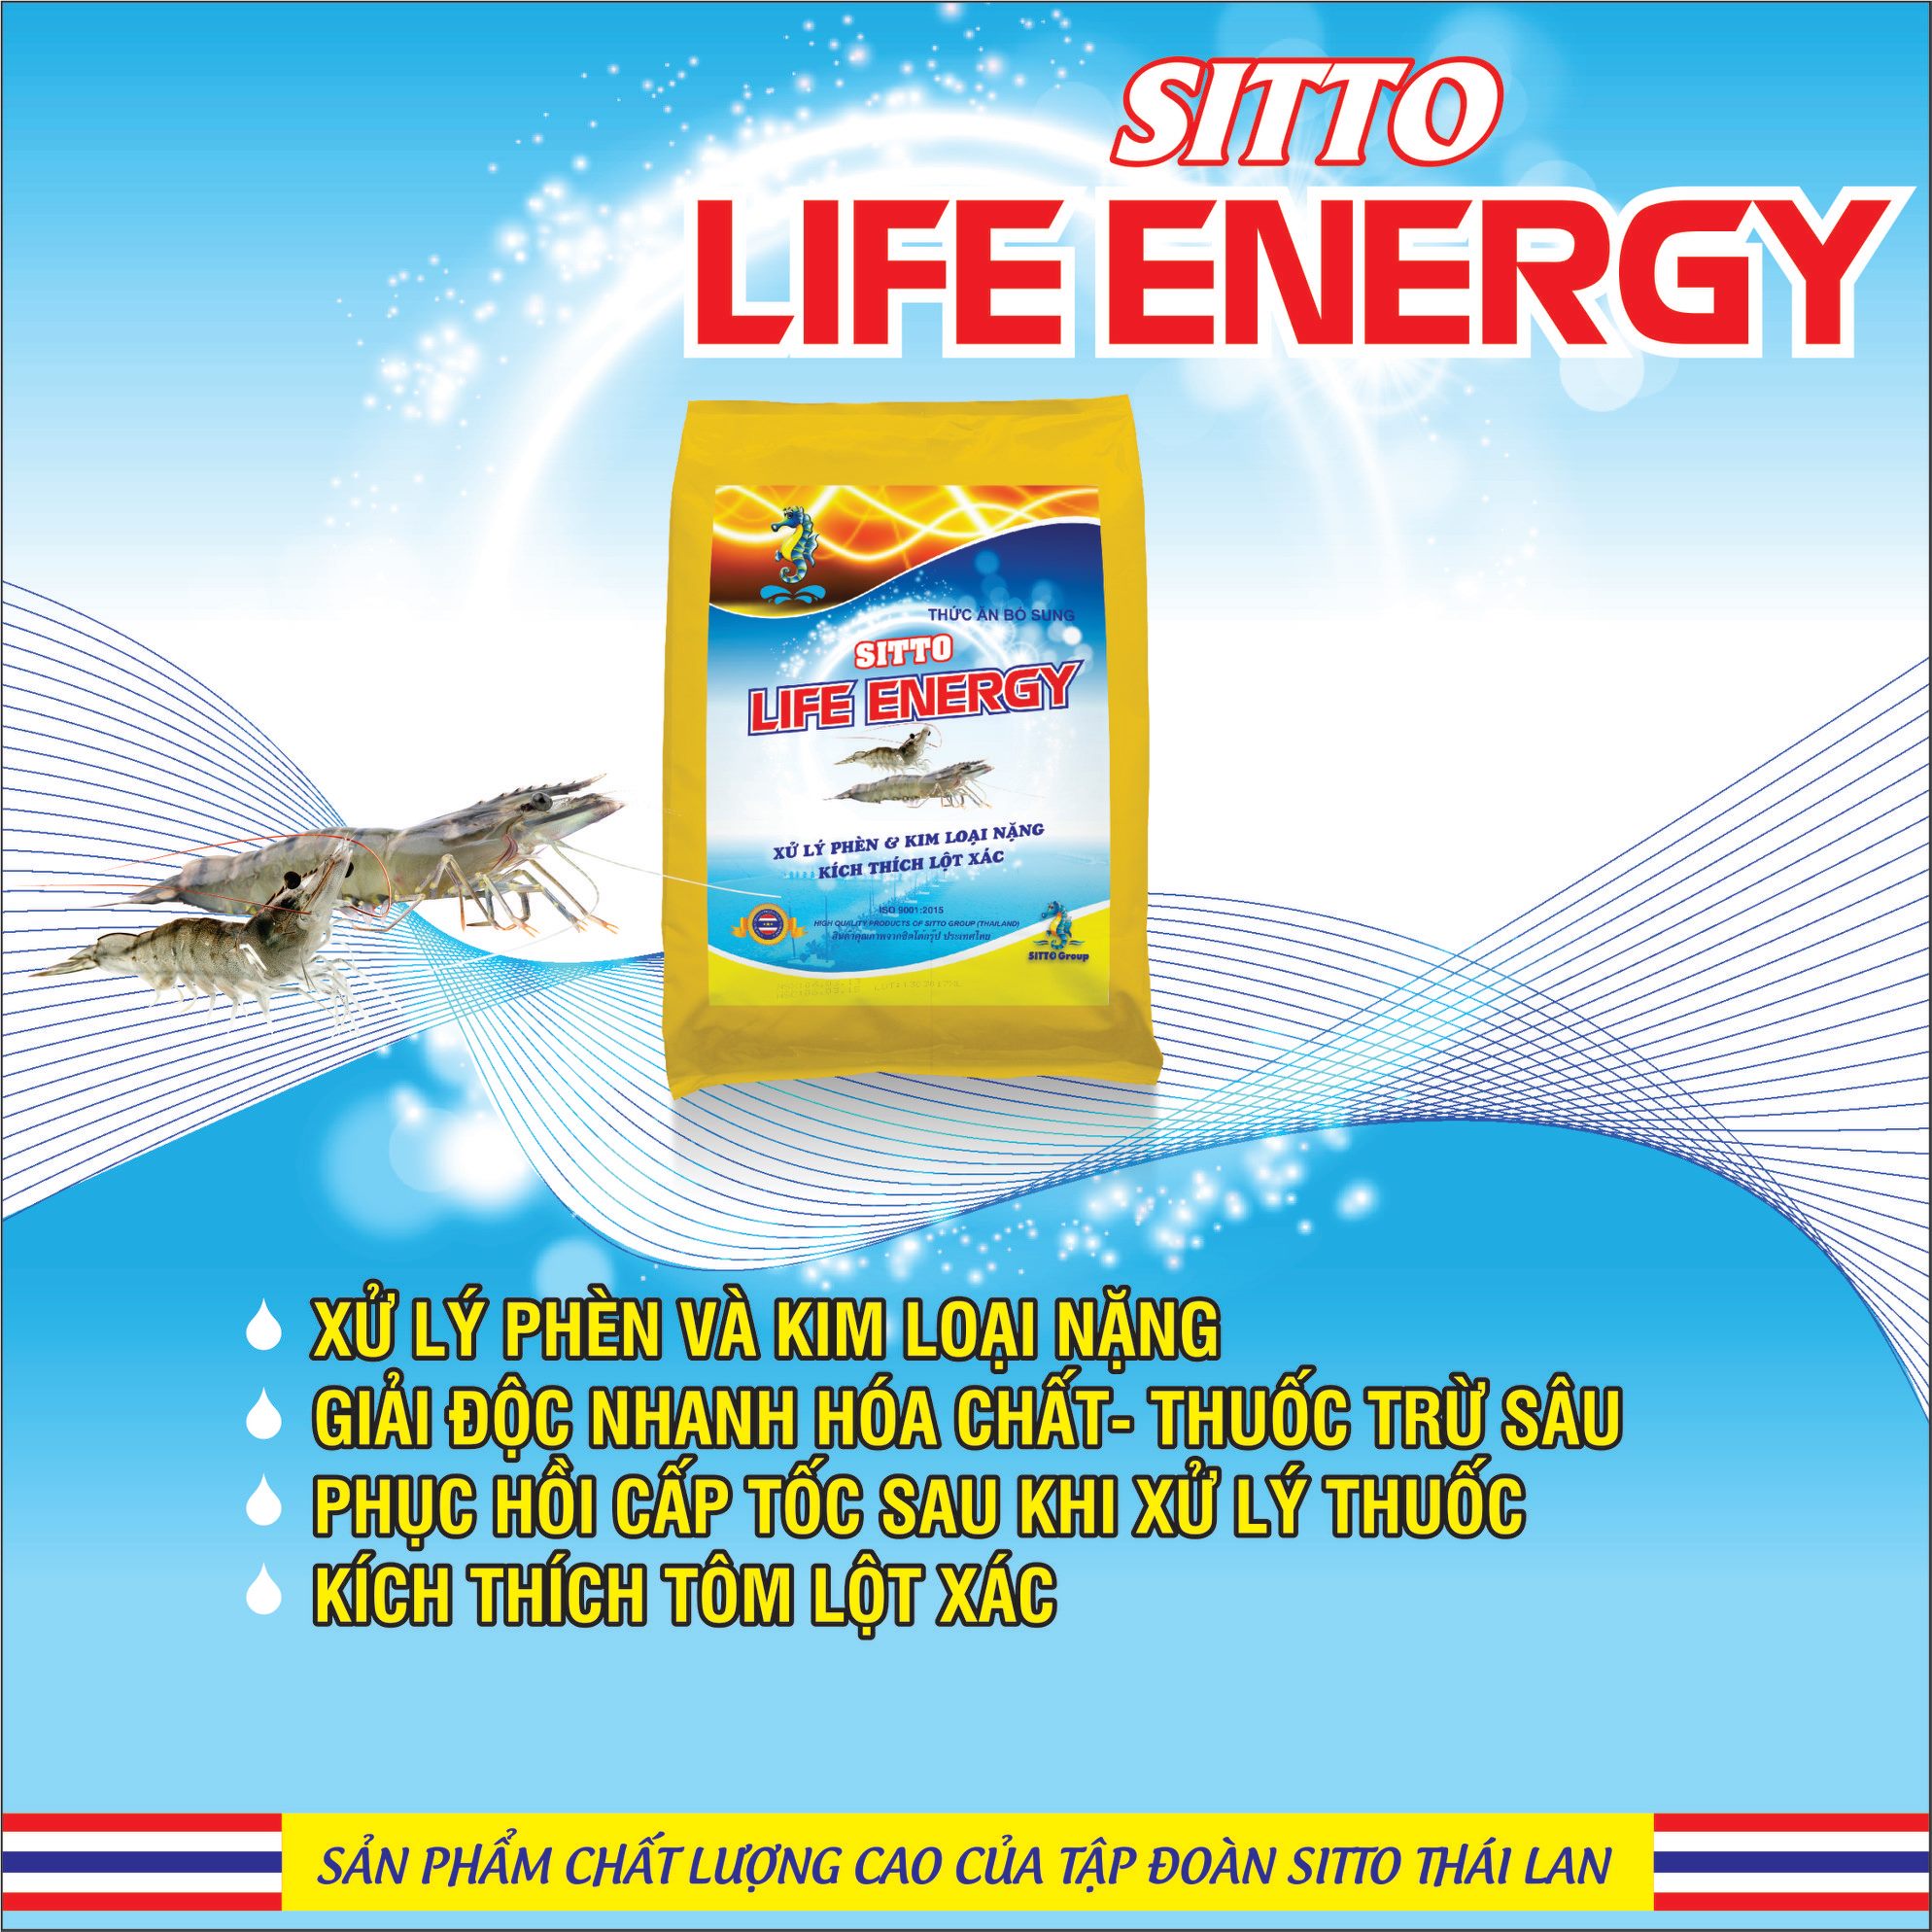 Dinh dưỡng bổ sung - Sitto Life Energy (Gói 500g)